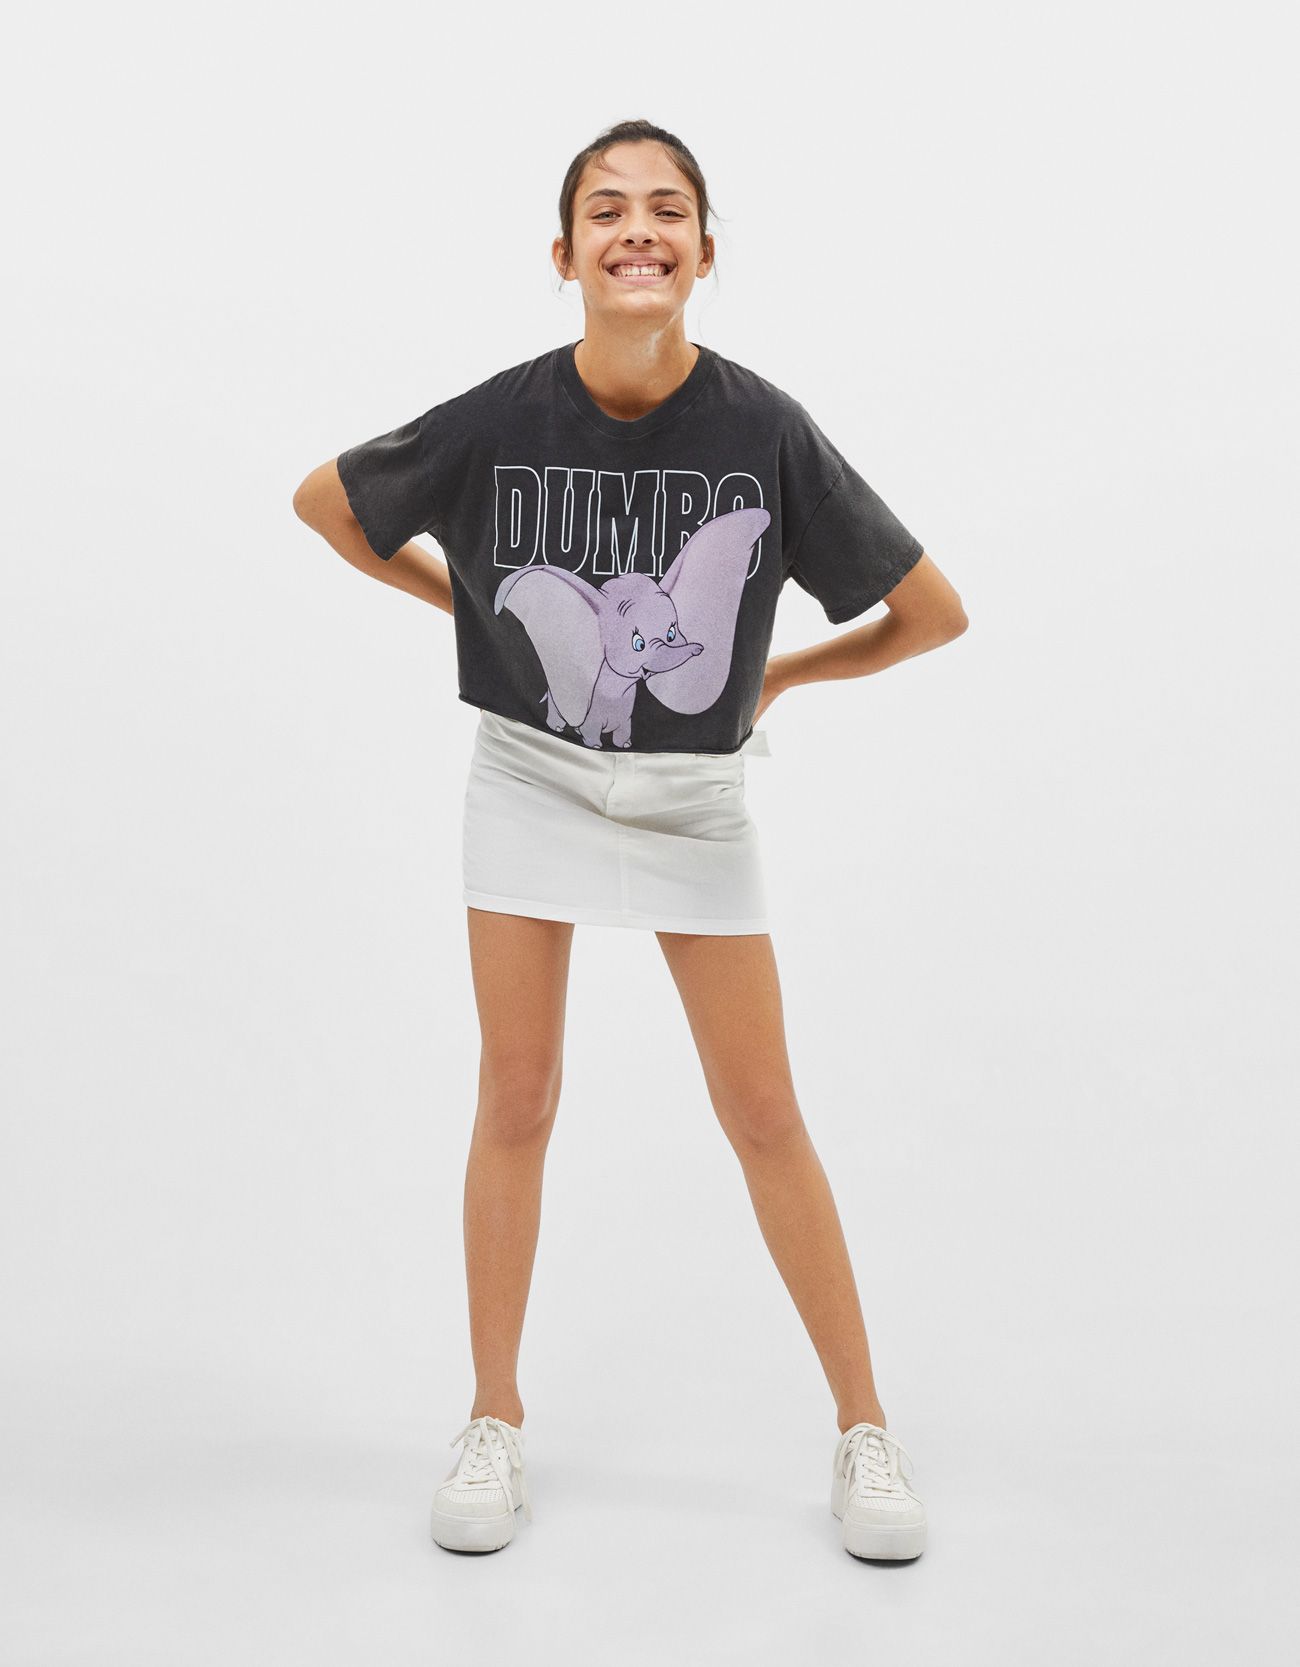 La camiseta 'cropped' Dumbo que lanzado Bershka es todo lo que necesitas darle la bienvenida al buen